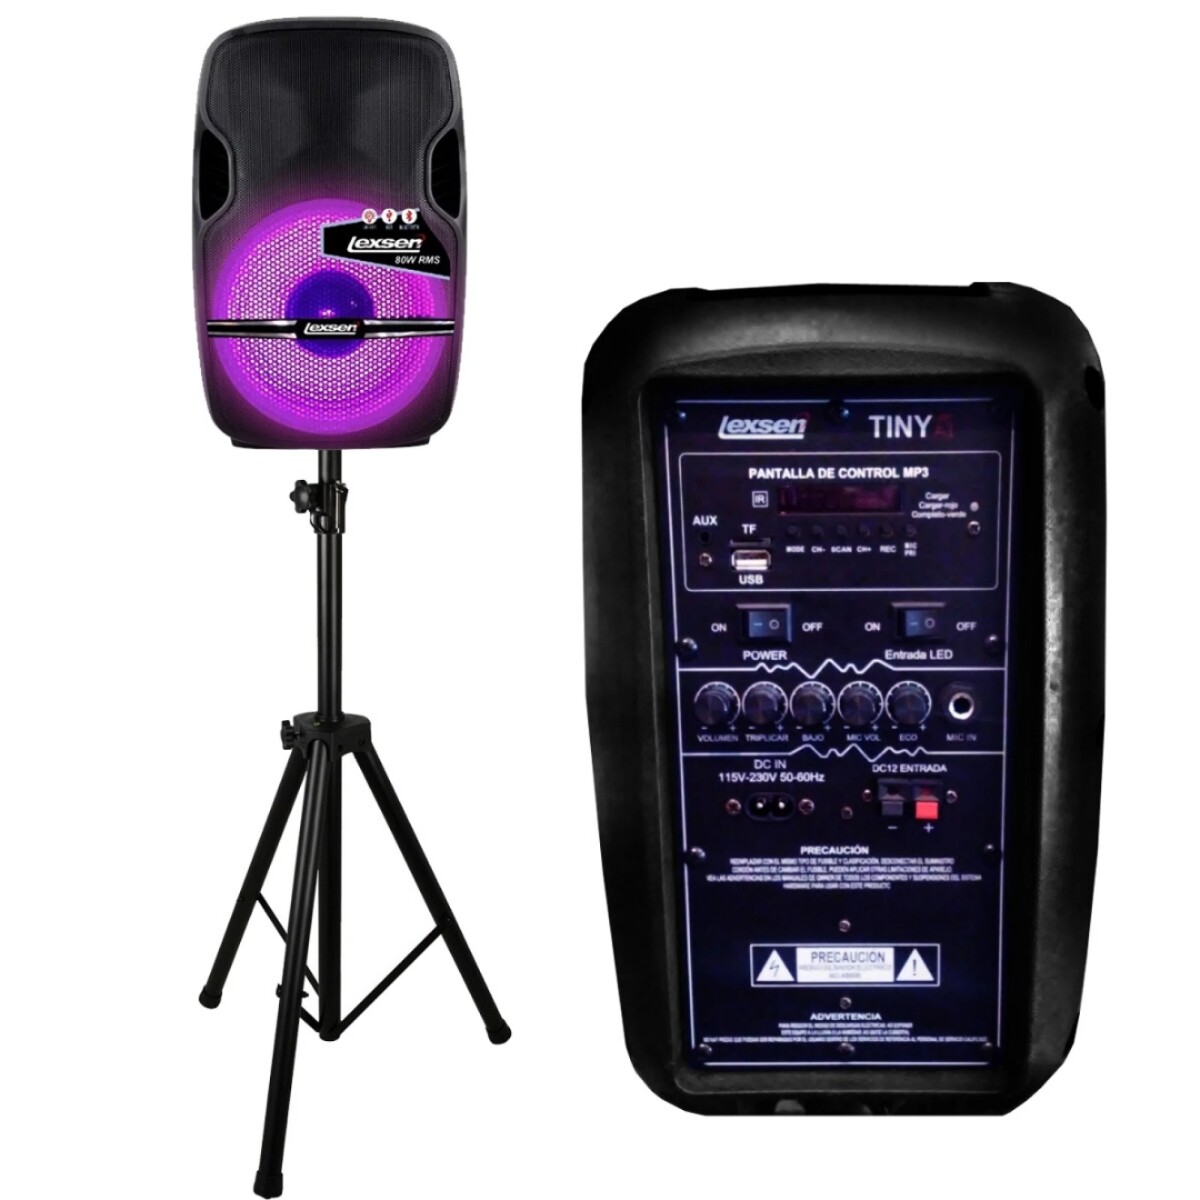 Kit caja acustica lexsen tiny 80w + micrófono + soporte bluetooth rgb Negro